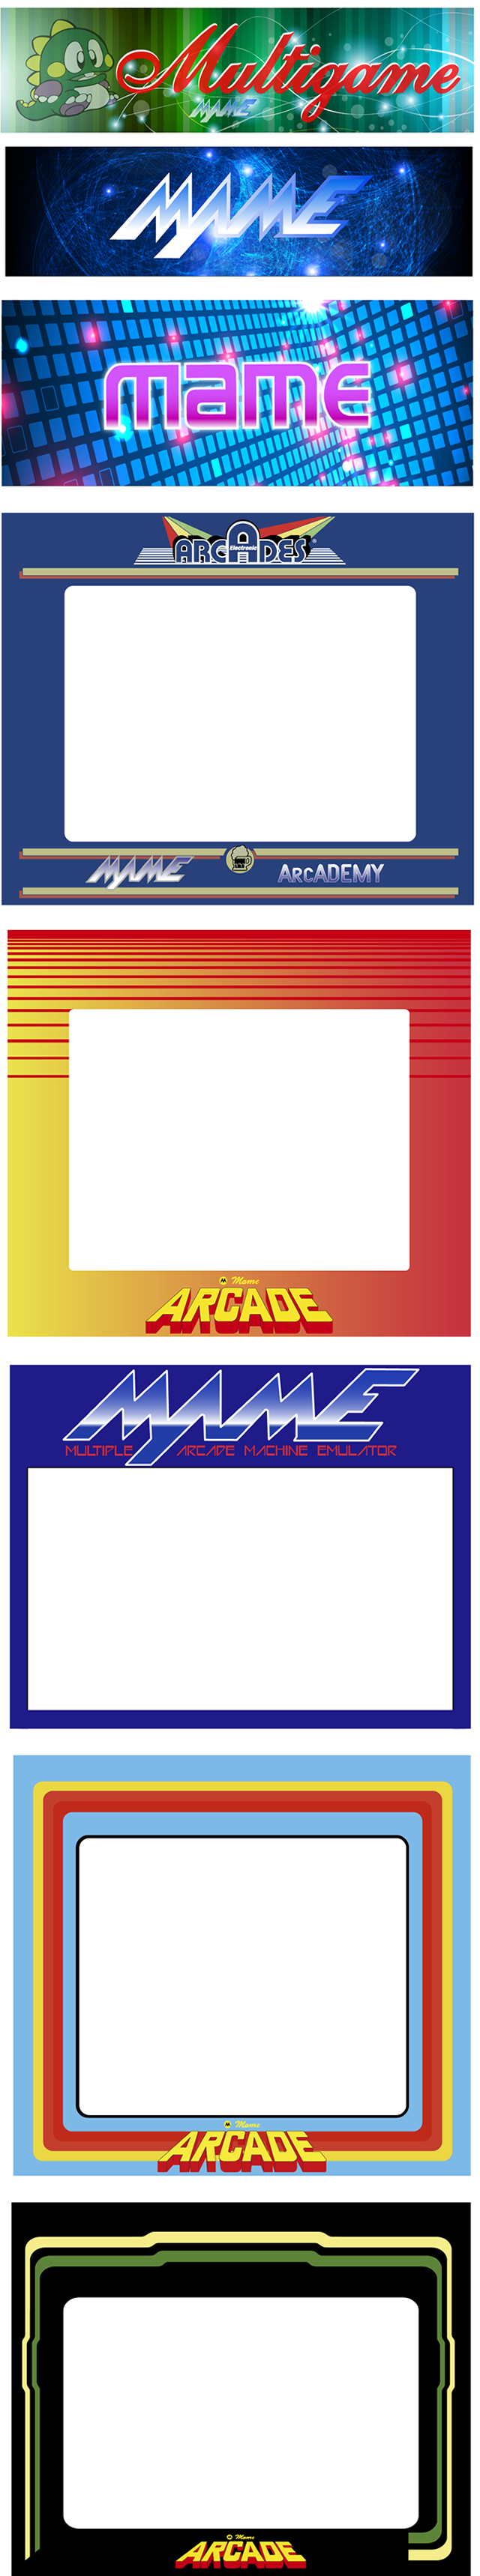 impresión en vinilo adhesivo de artes finales arcade